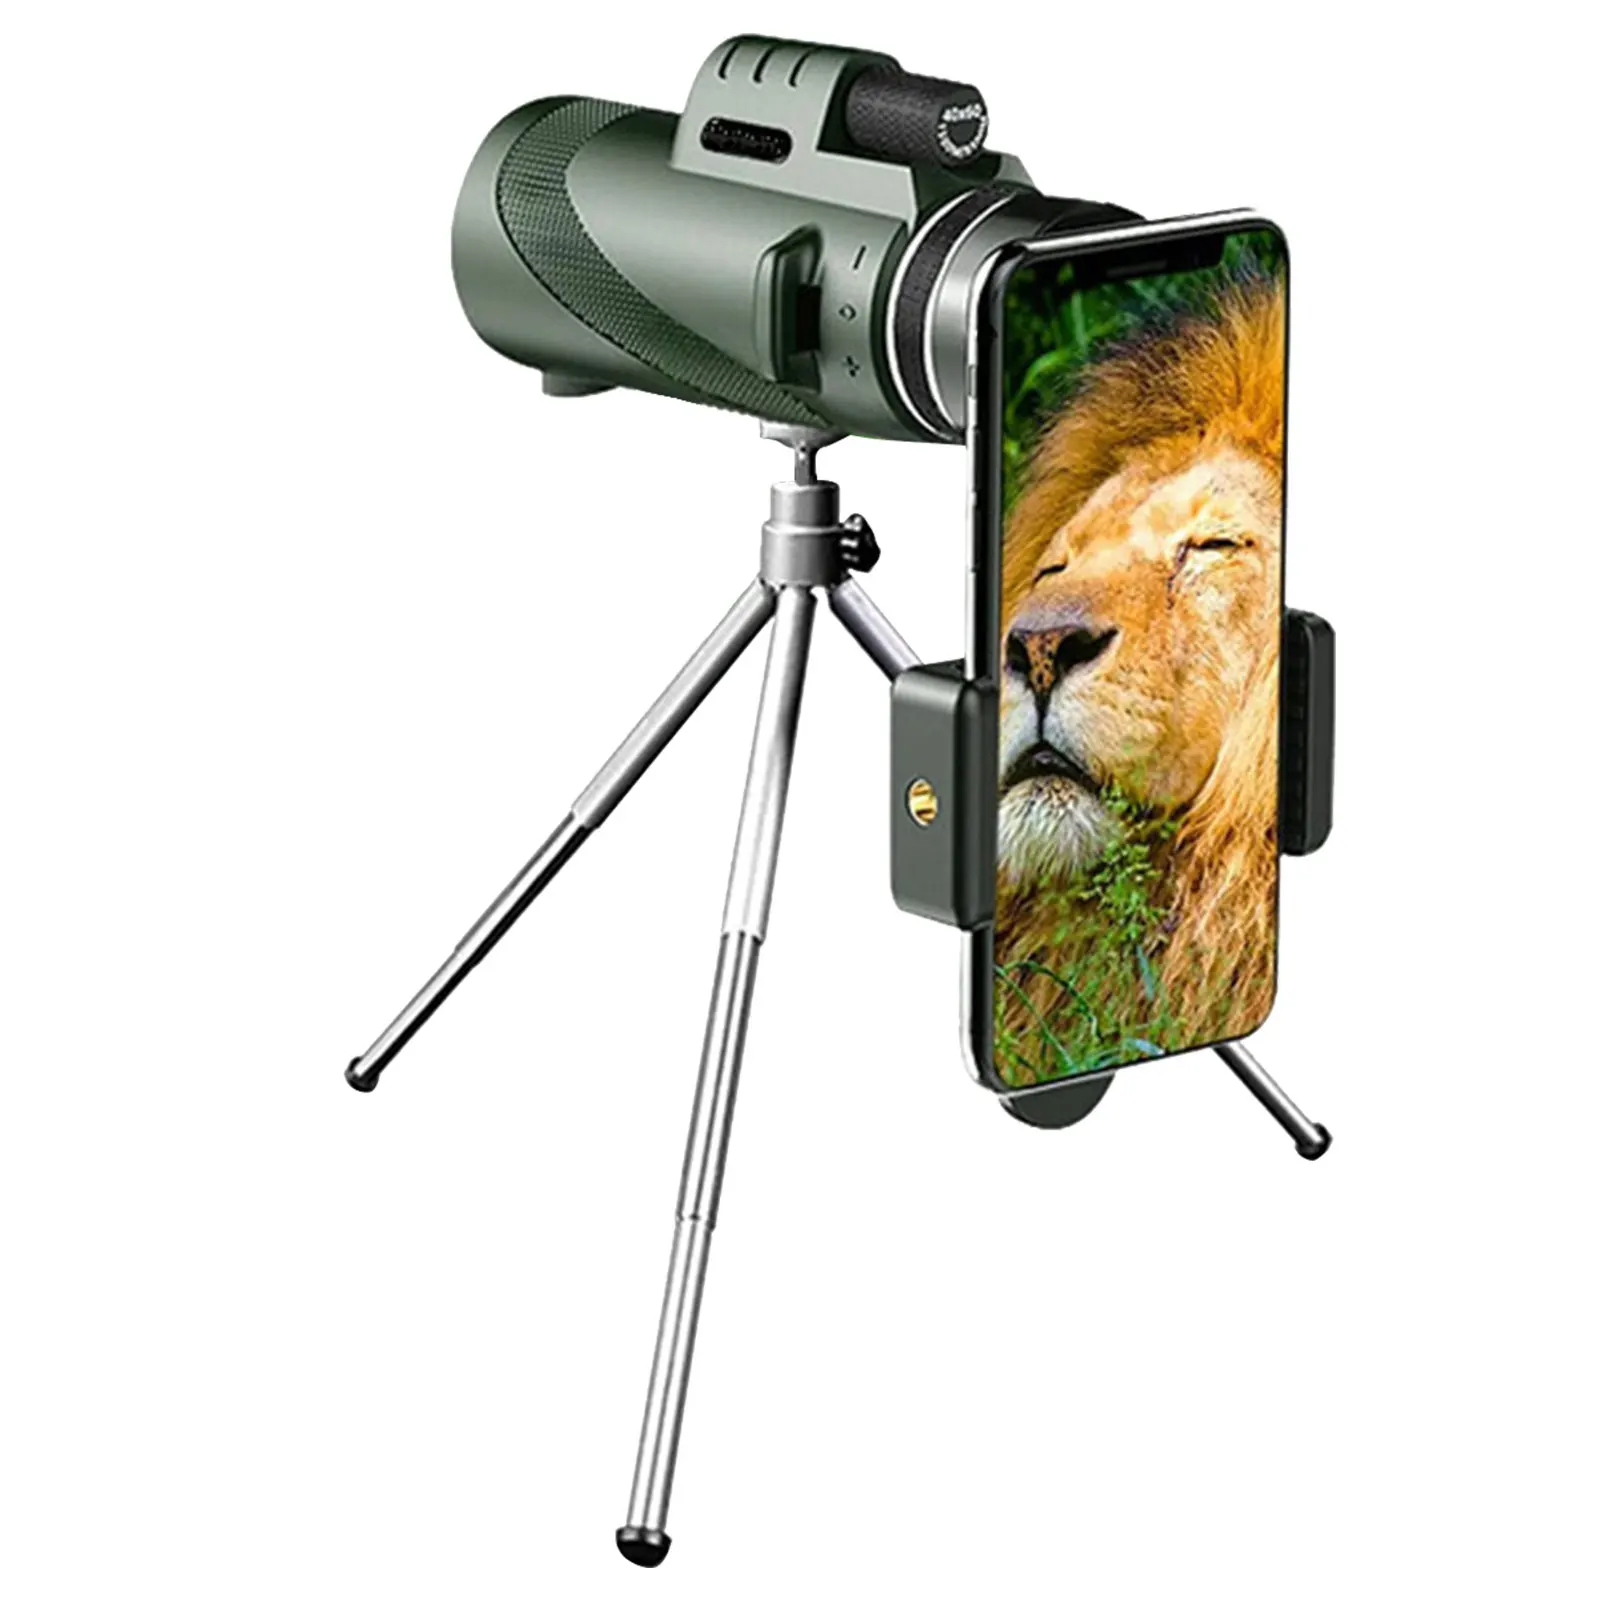 

Монокулярный телескоп для взрослых 40x60, мощная призма с адаптером для телефона, штатив BAK4 Prism для наблюдения за птицами, дикой природы, кемпи...